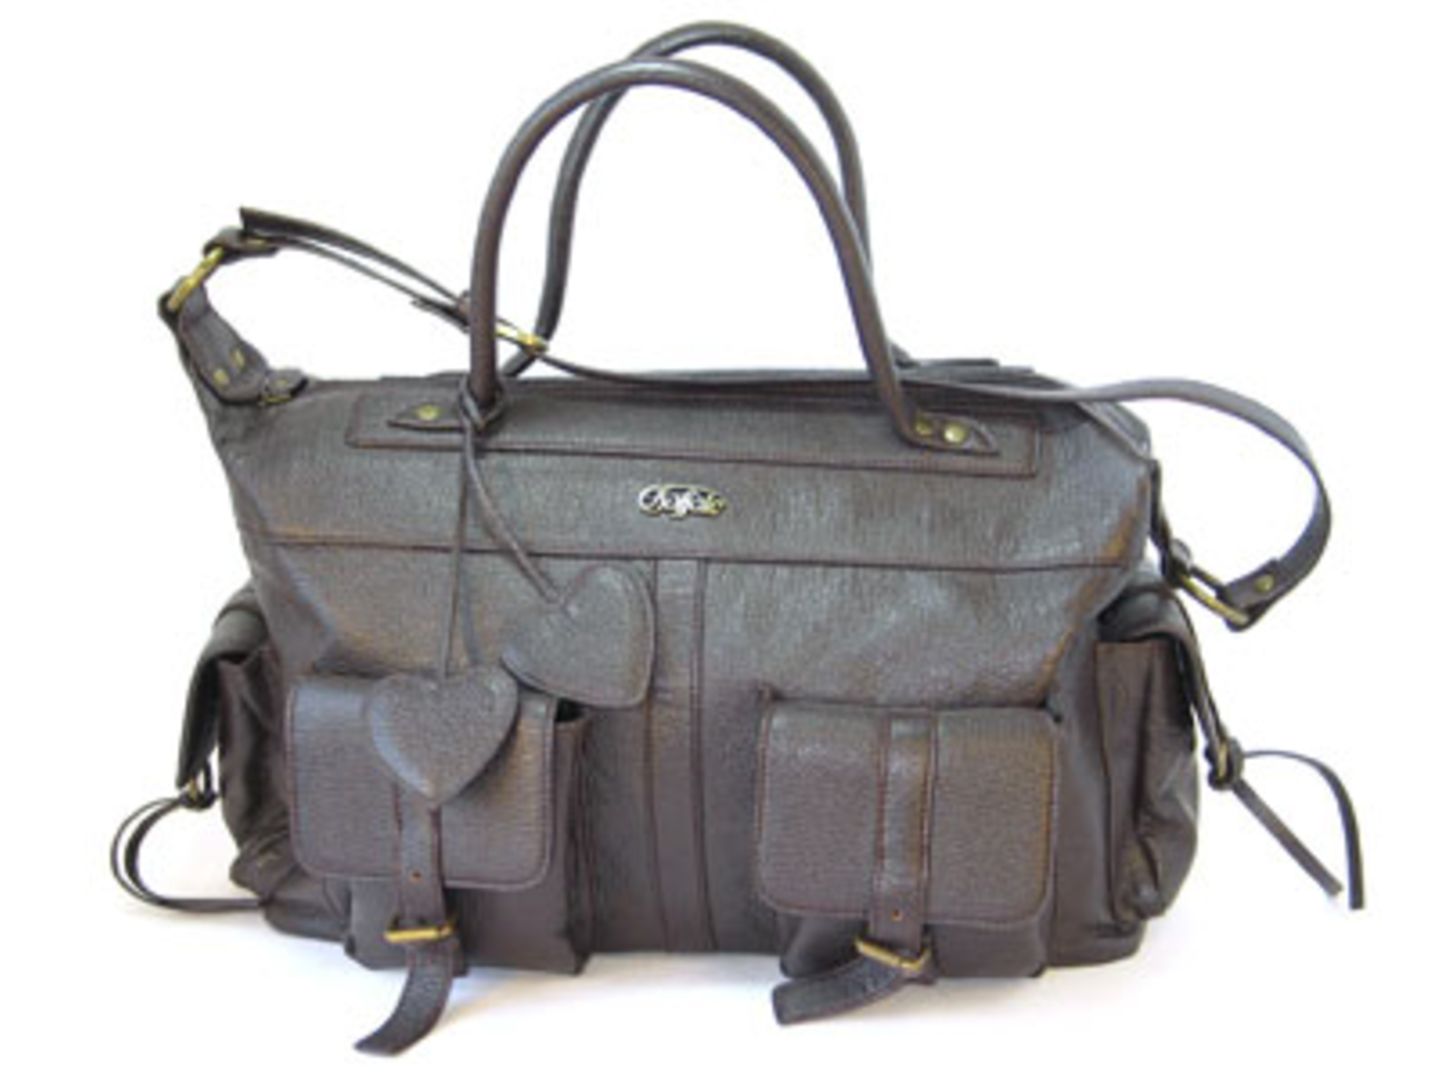 Für diese Handtasche muss man doch ein Herz haben. Mit vielen aufgesetzten Täschchen herrscht Ruhe und Ordnung im Gepäck. Hersteller: BuffaloPreis: 34,90 Euro